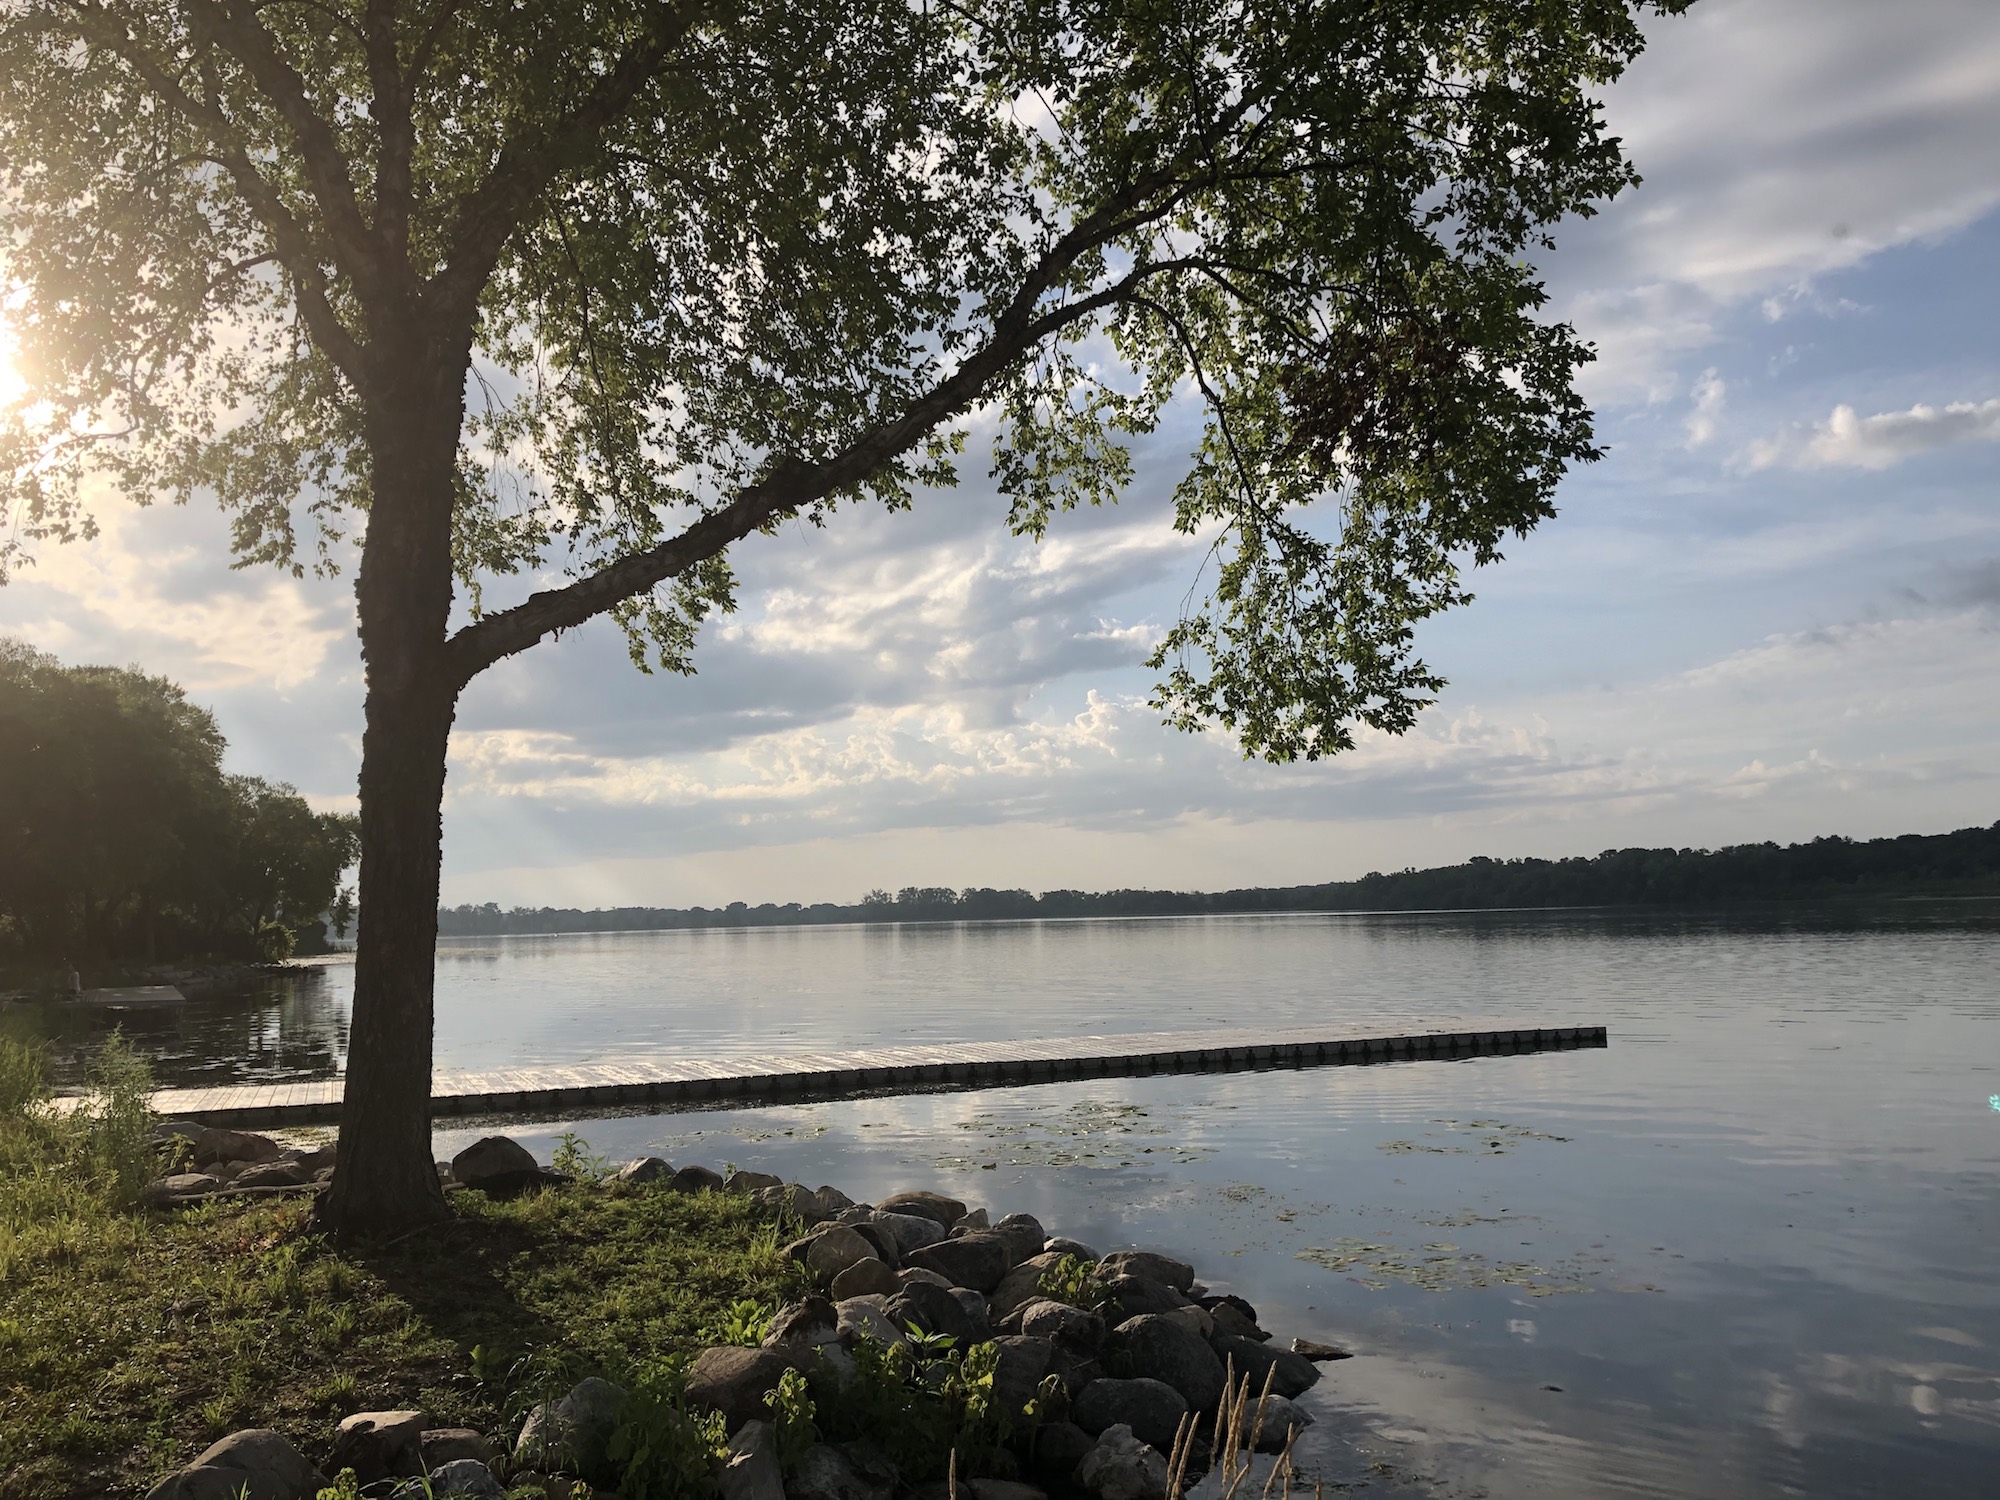 Lake Wingra on July 2, 2019.